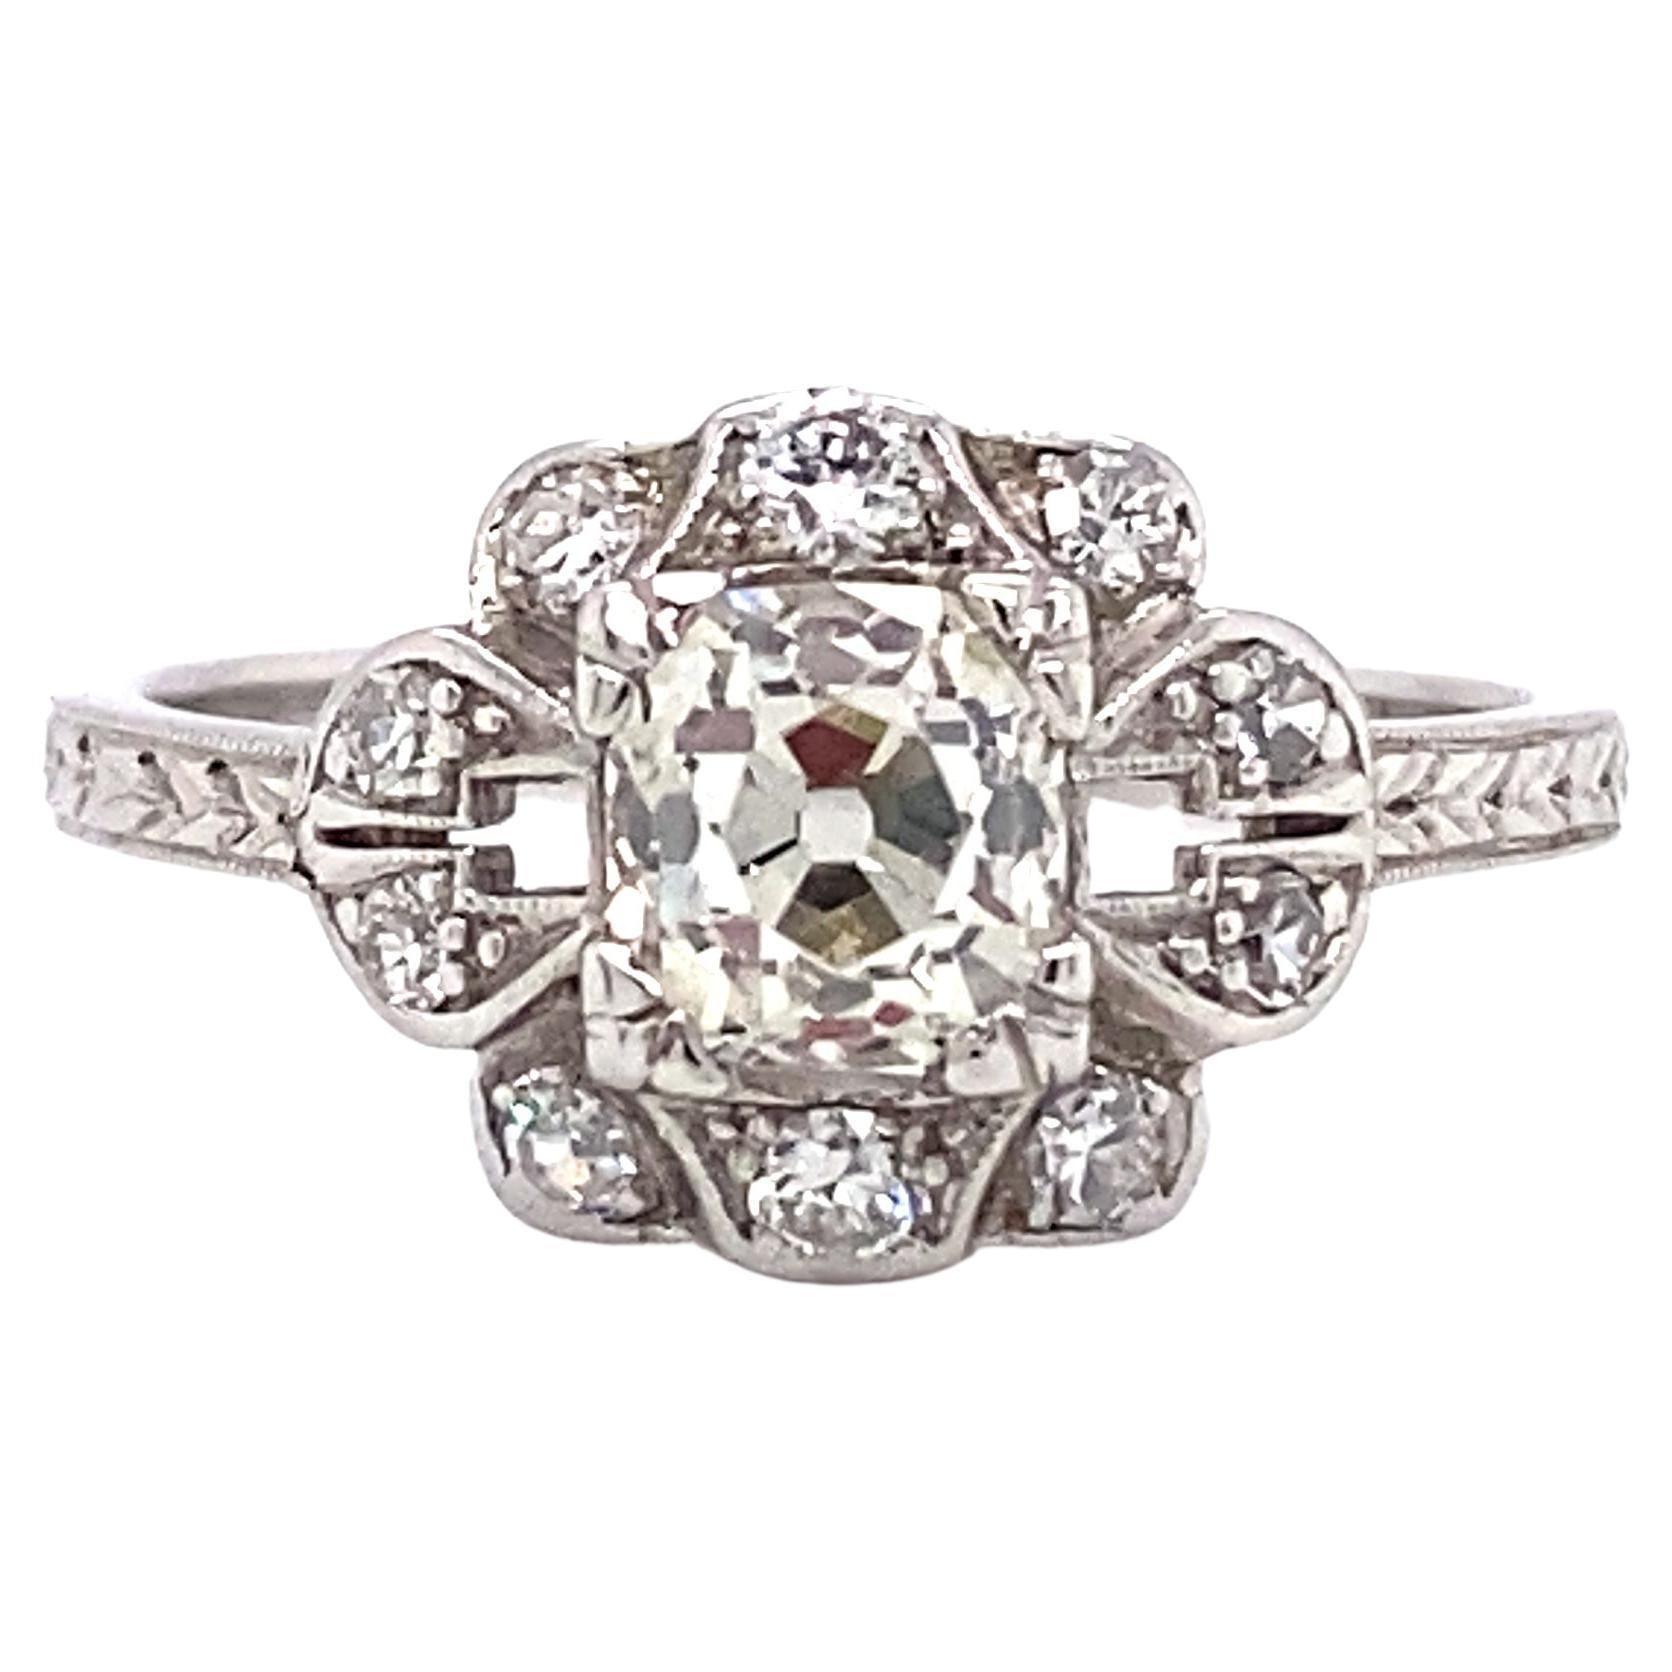 Circa 1920s Art Deco 0.80 Carat Diamond Engagement Ring in Platinum For Sale